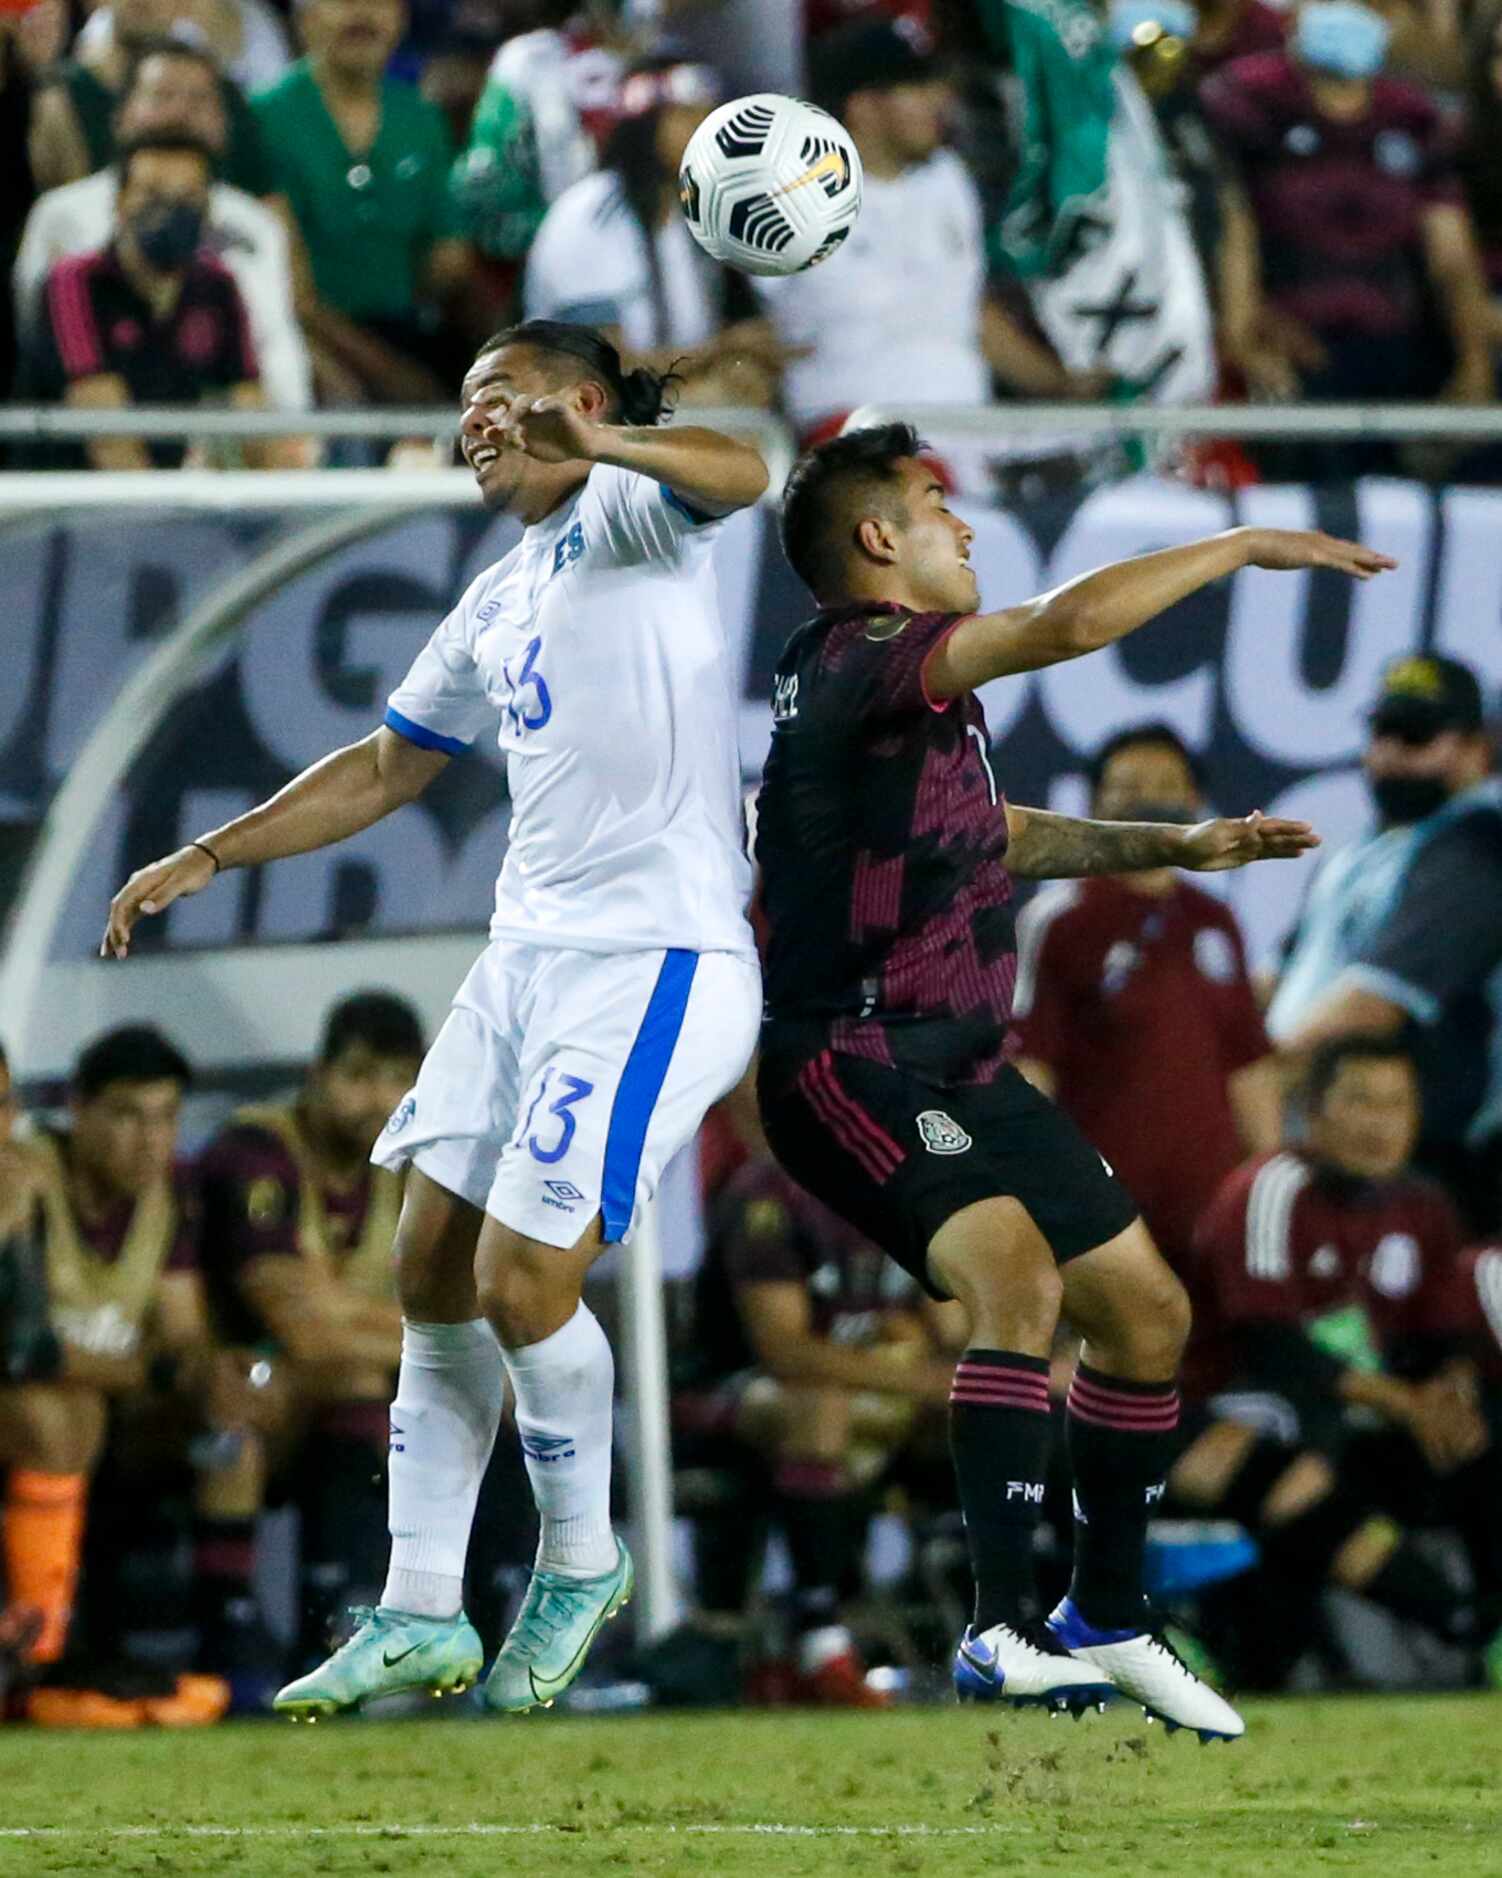 El Salvador defender Alexander Larín (13) and Mexico forward Erick Sánchez (7) leap to head...